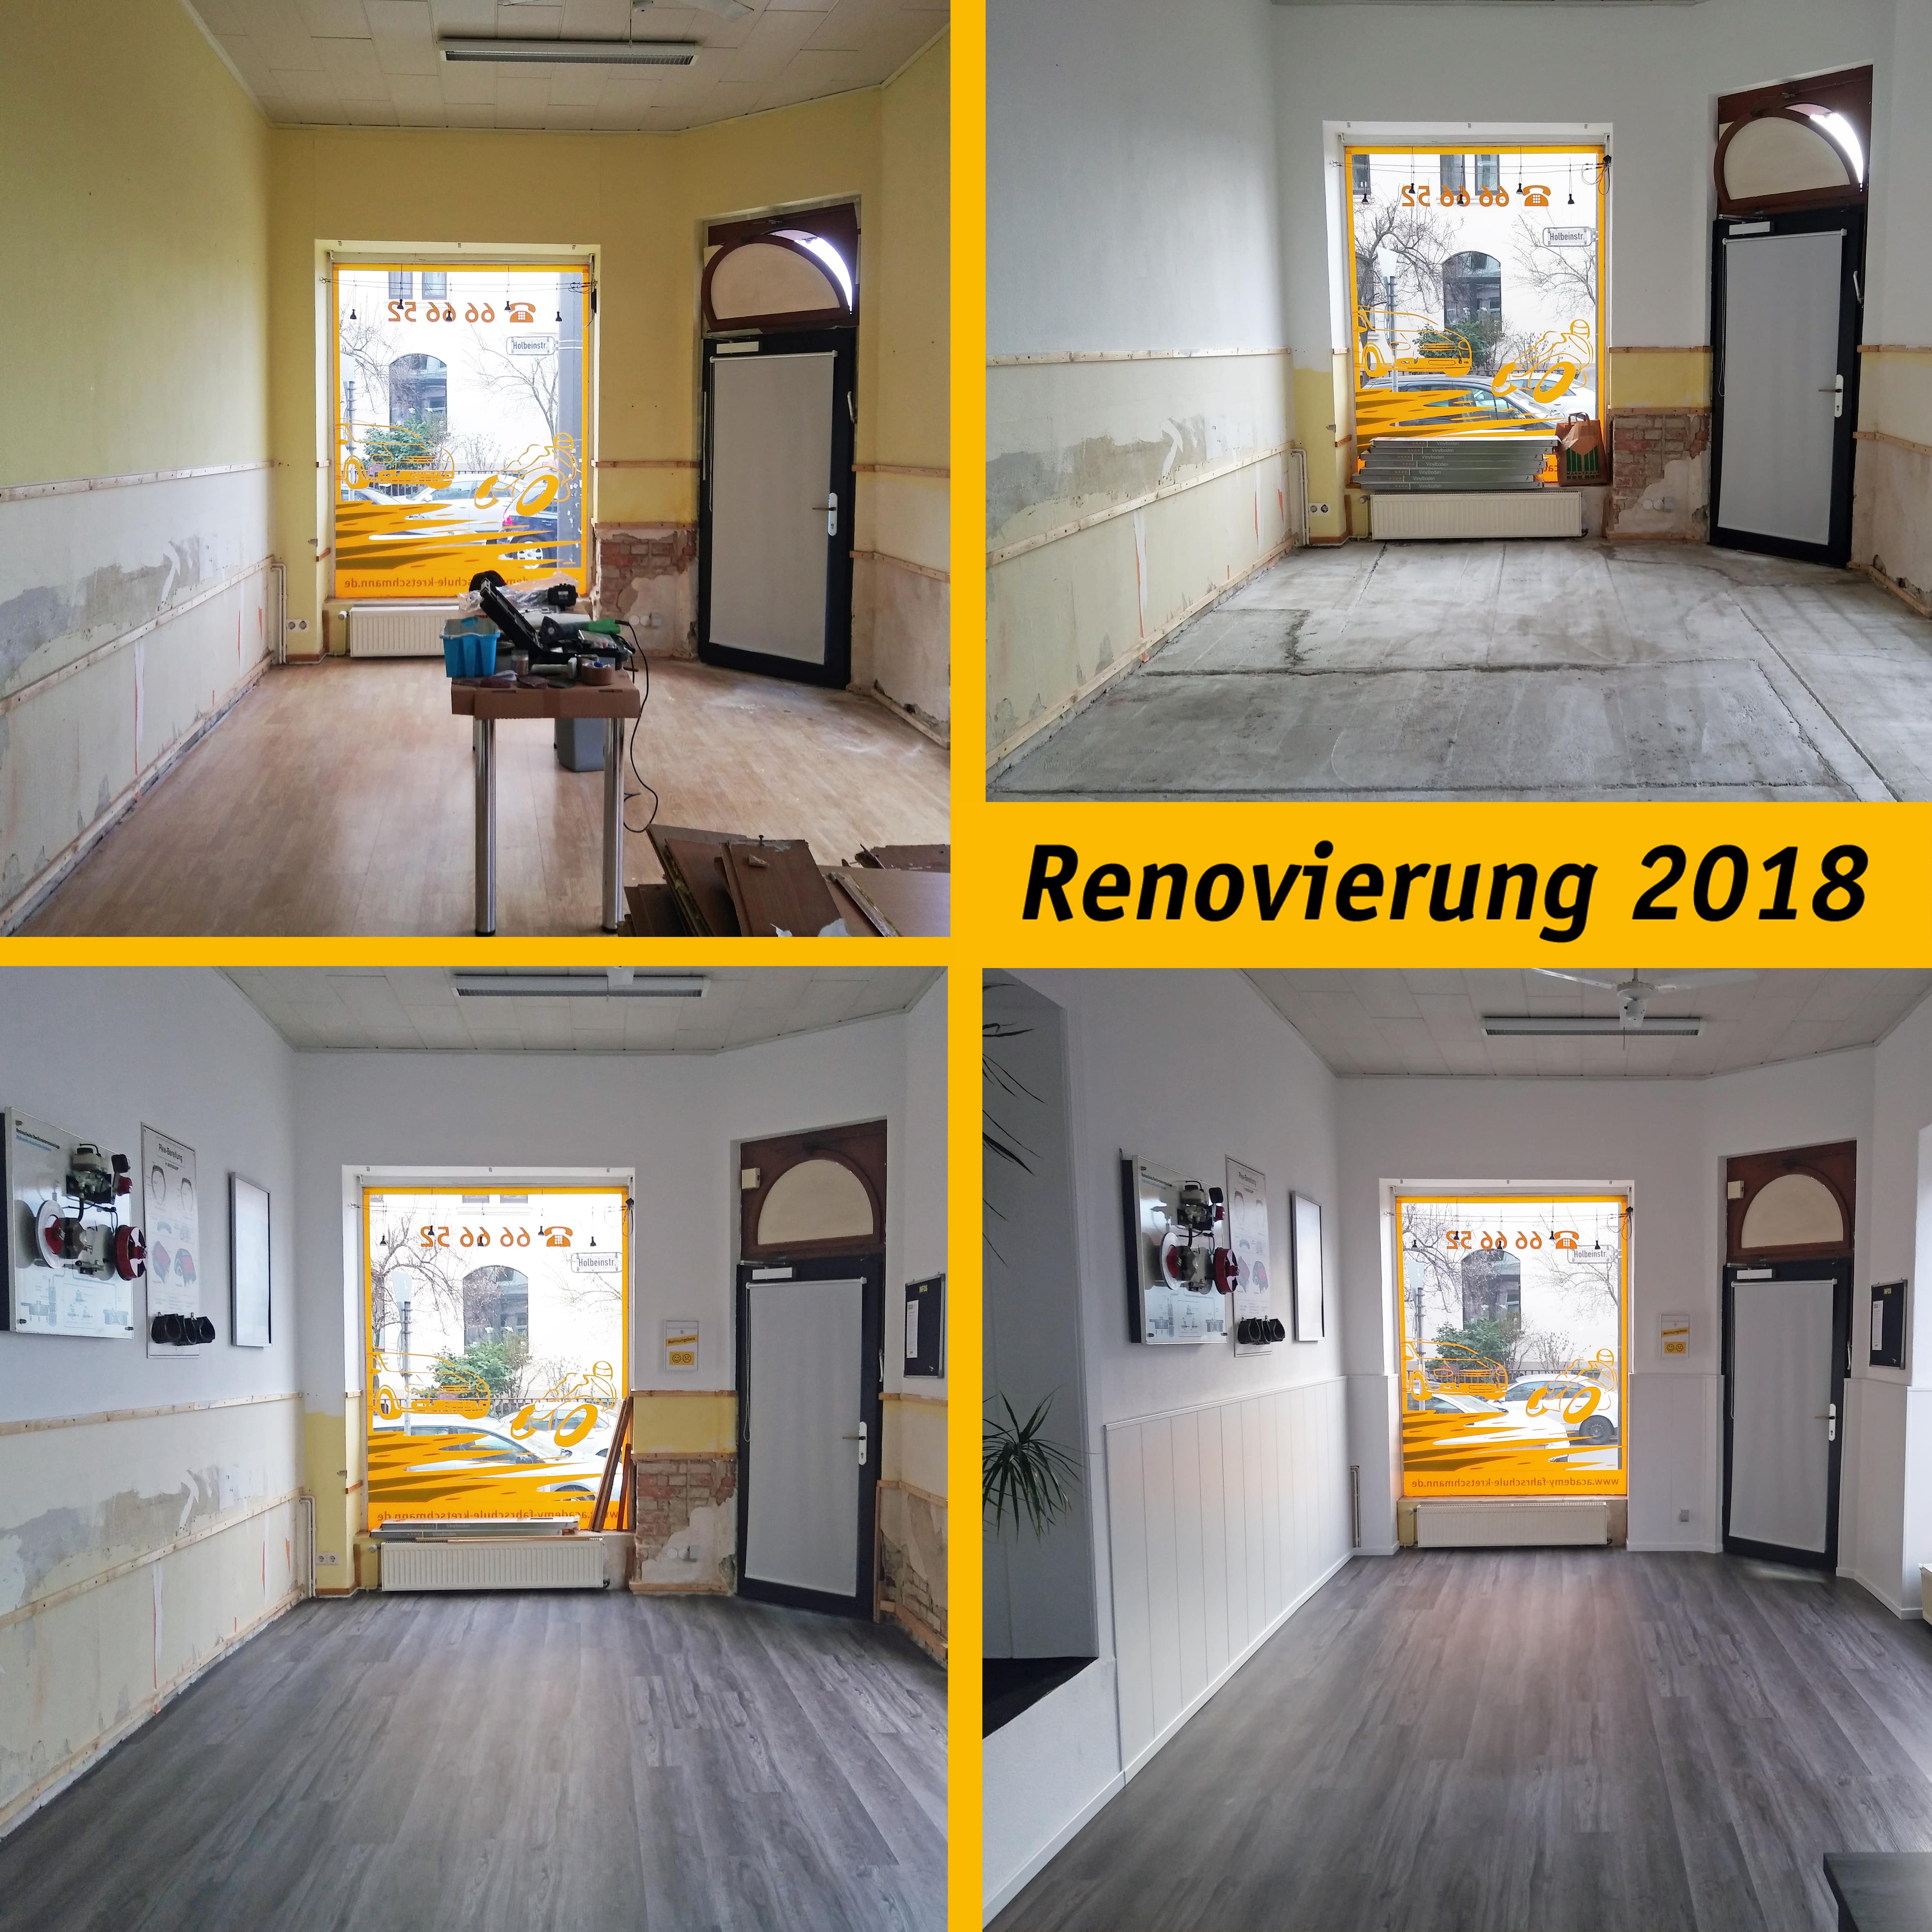 Renovierung 2018